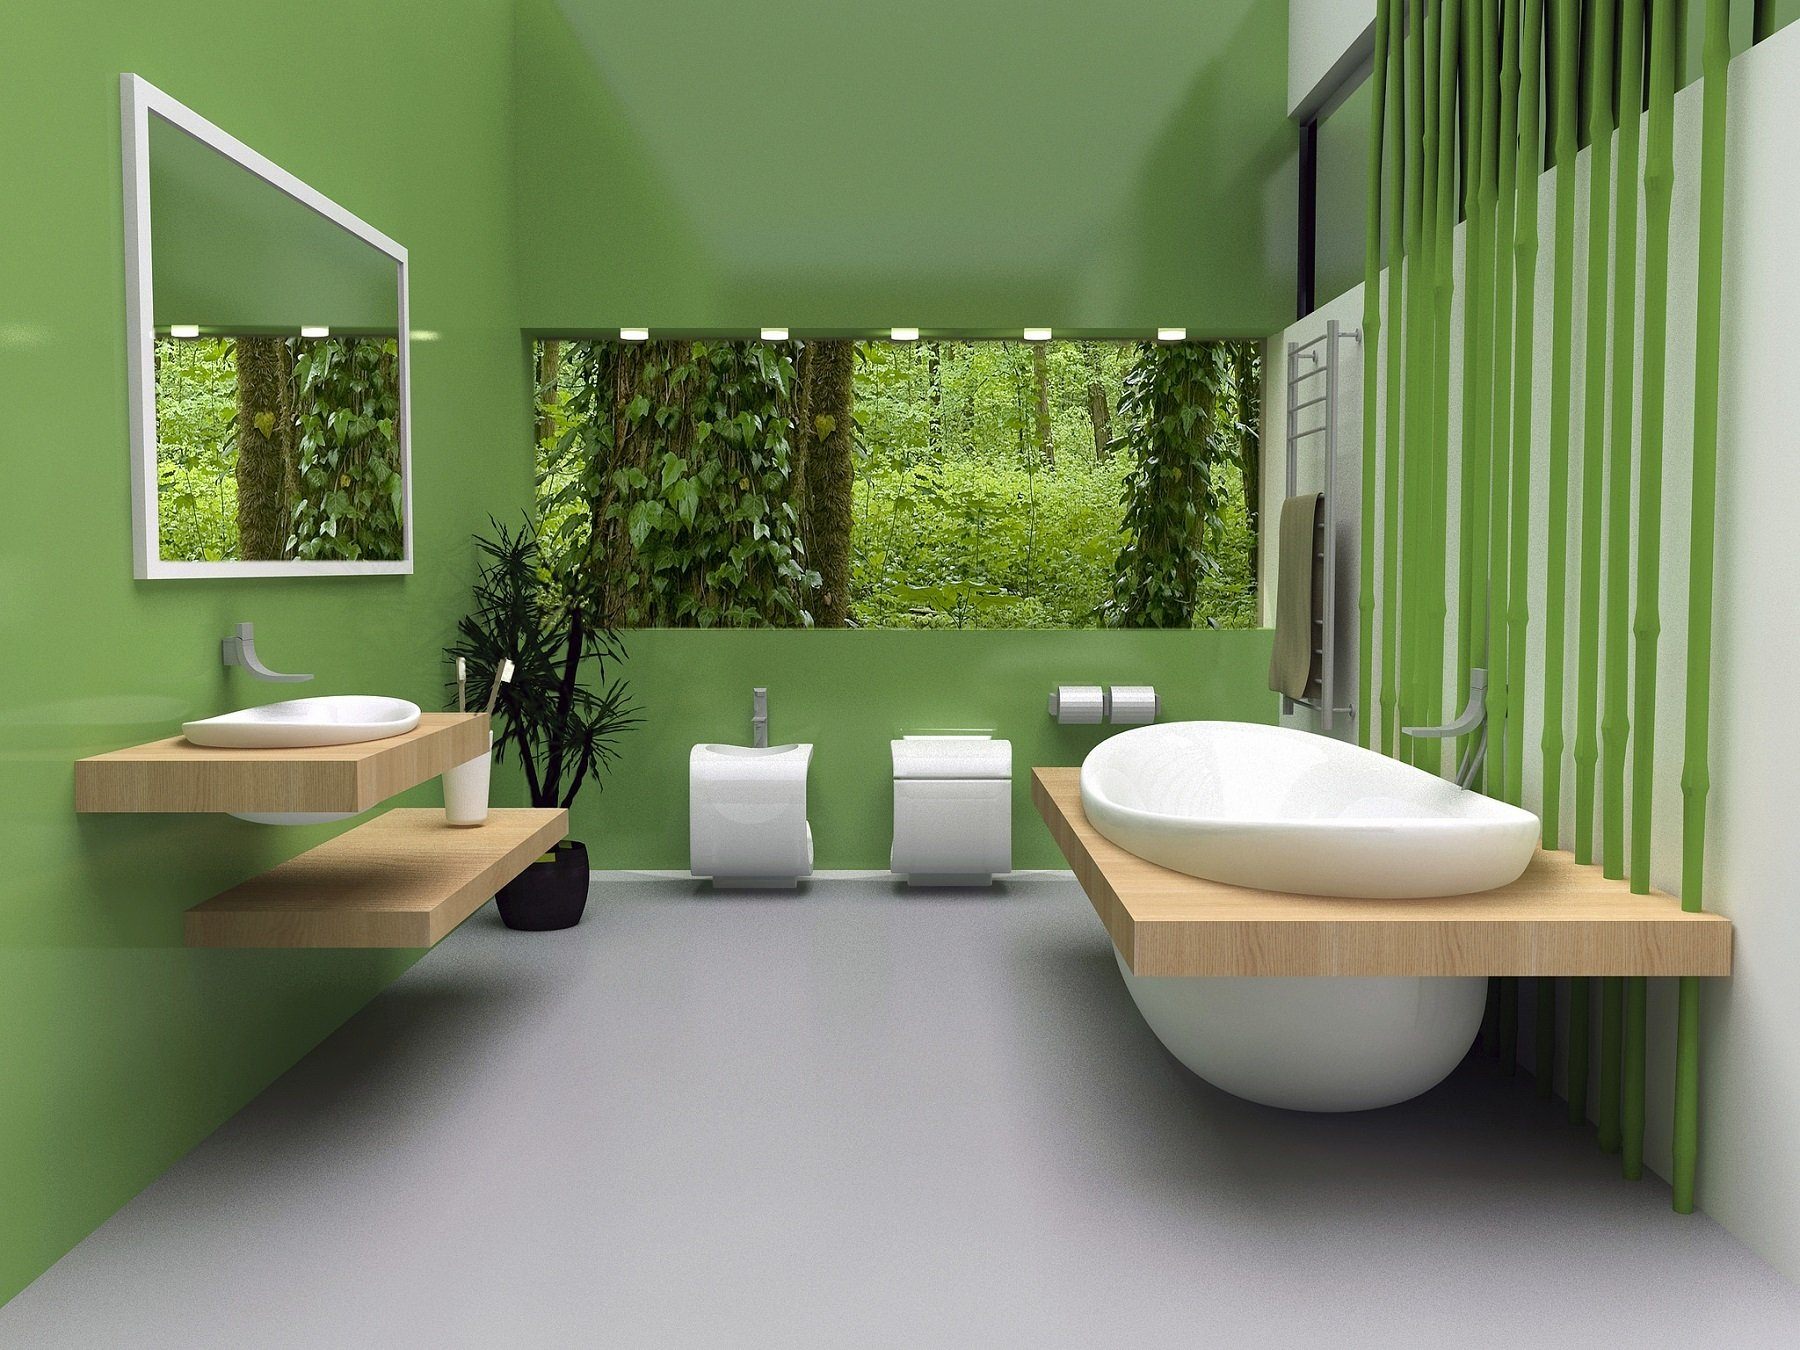 Зеленая ванна купить. Ванная современная зеленая. Дизайн ванной в зеленых тонах. Санузел зеленый с деревом. Яркие зеленые Ванные комнаты.